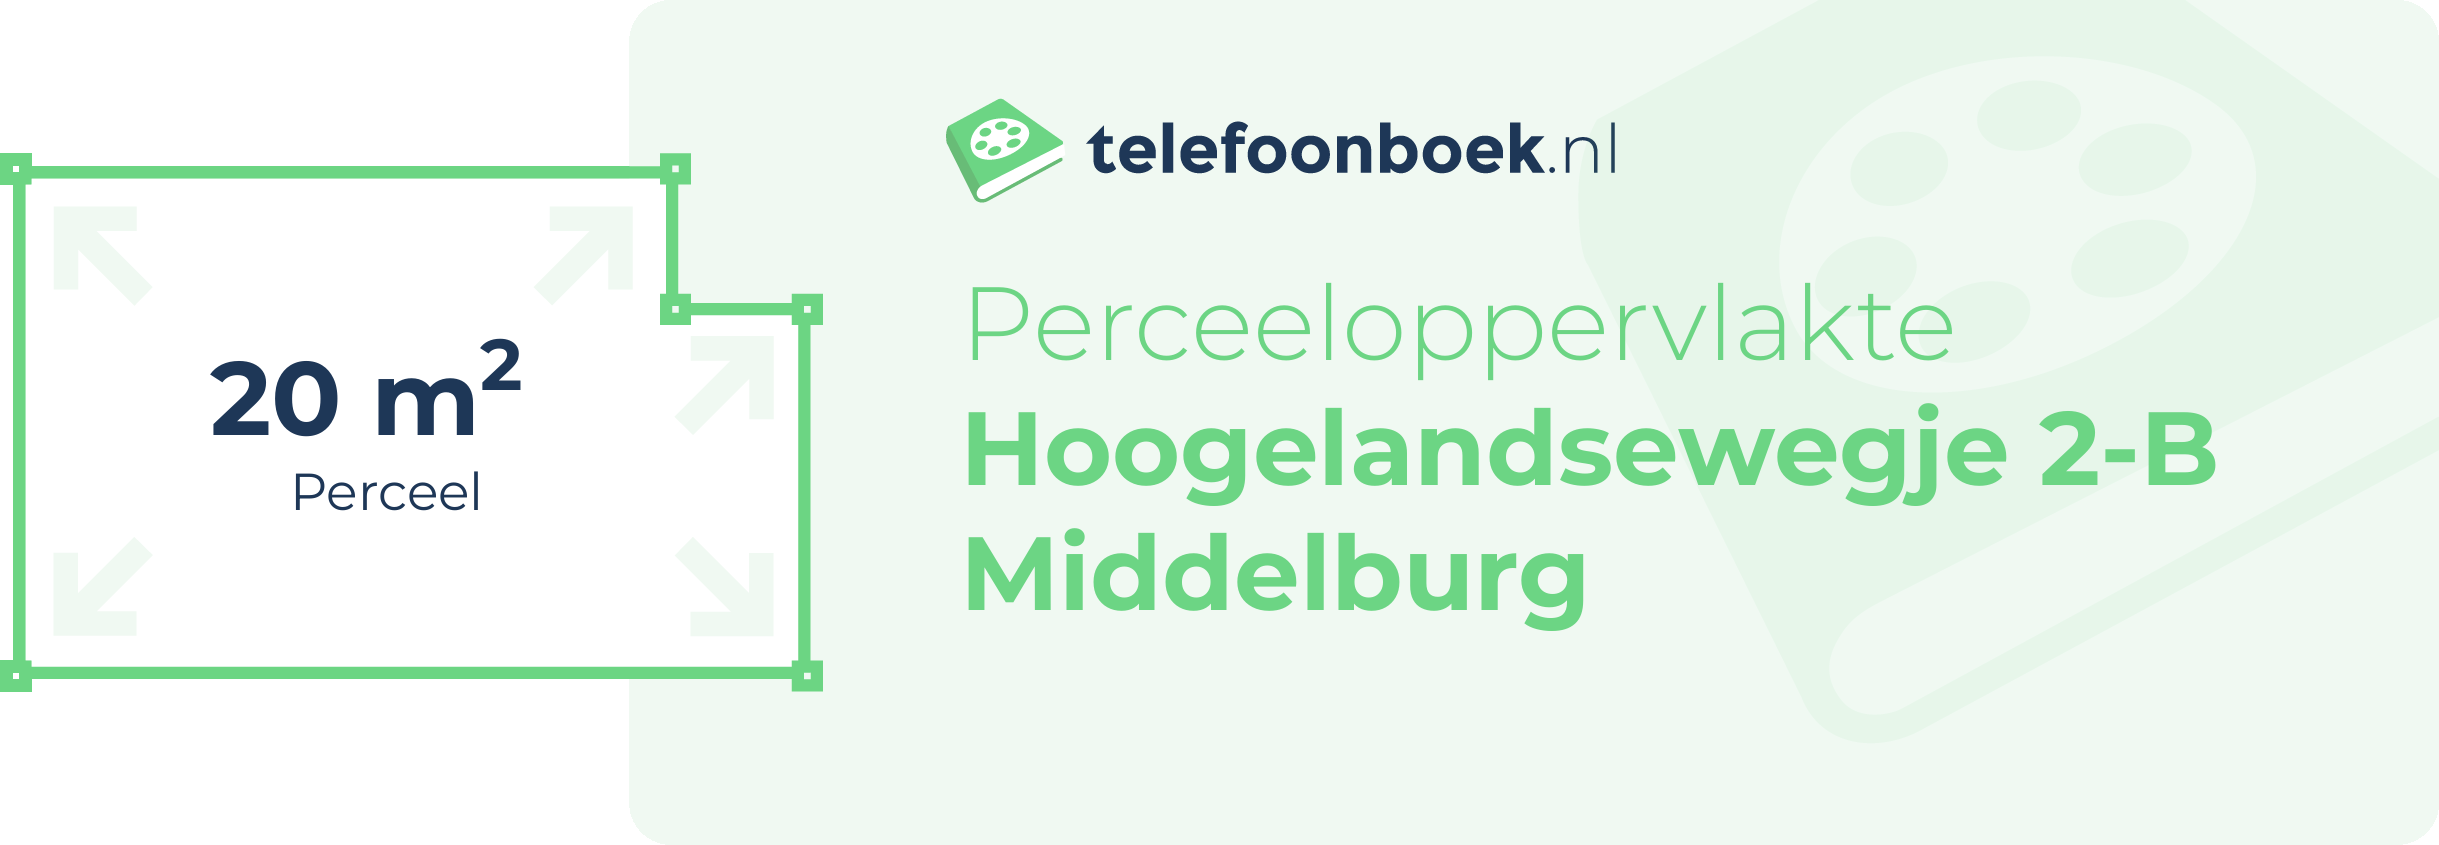 Perceeloppervlakte Hoogelandsewegje 2-B Middelburg